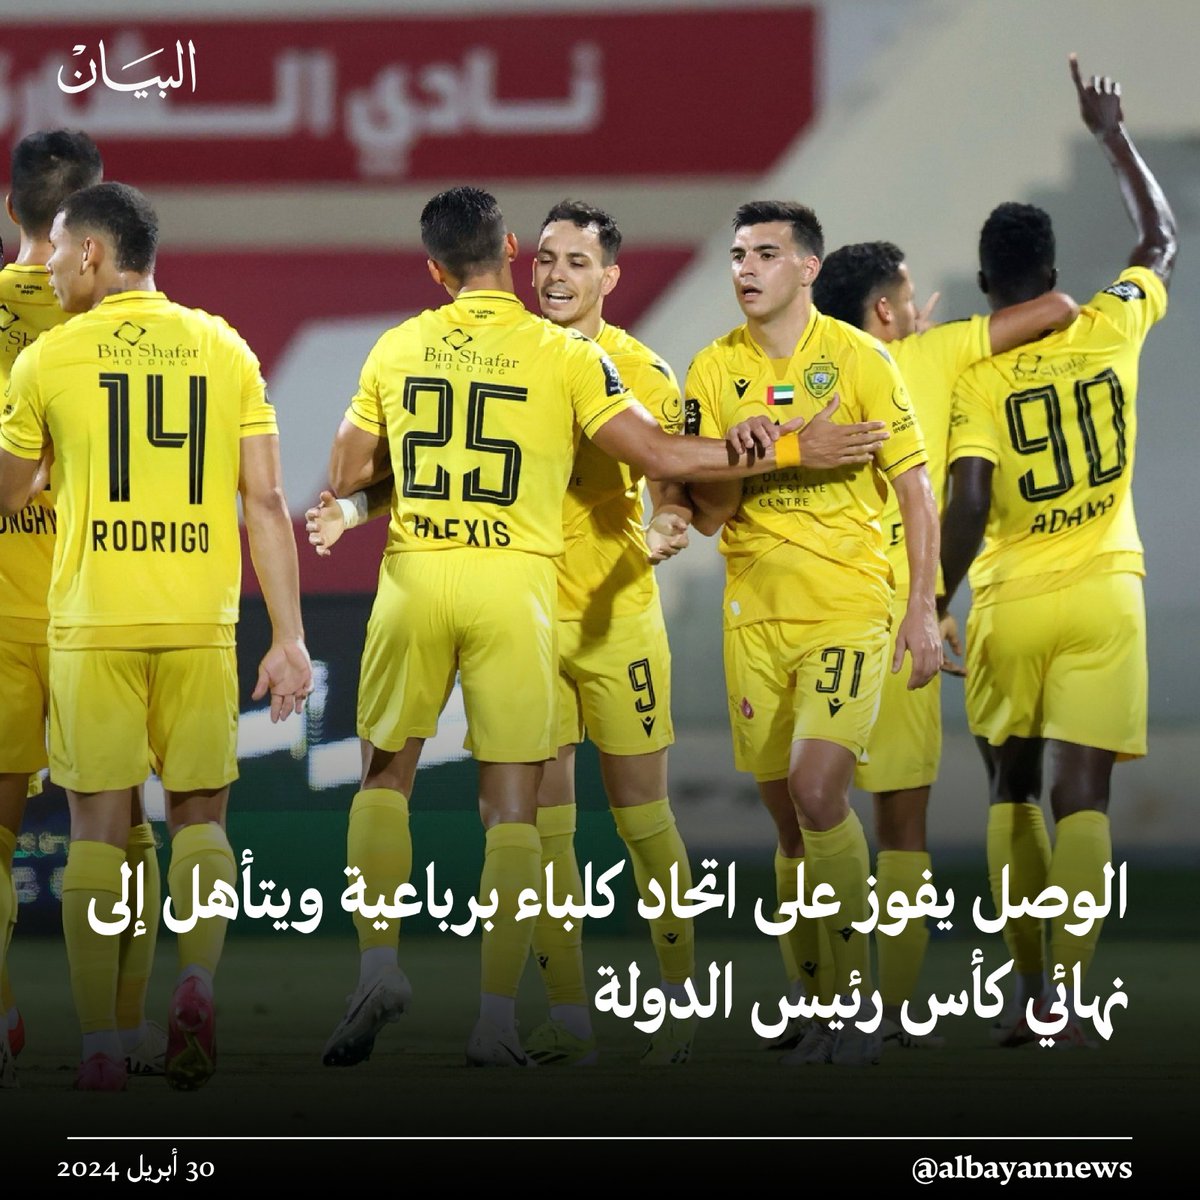 #الوصل يفوز على اتحاد كلباء برباعية ويتأهل إلى نهائي كأس رئيس الدولة
albayan.ae/sports/emirate…
#البيان_الرياضي